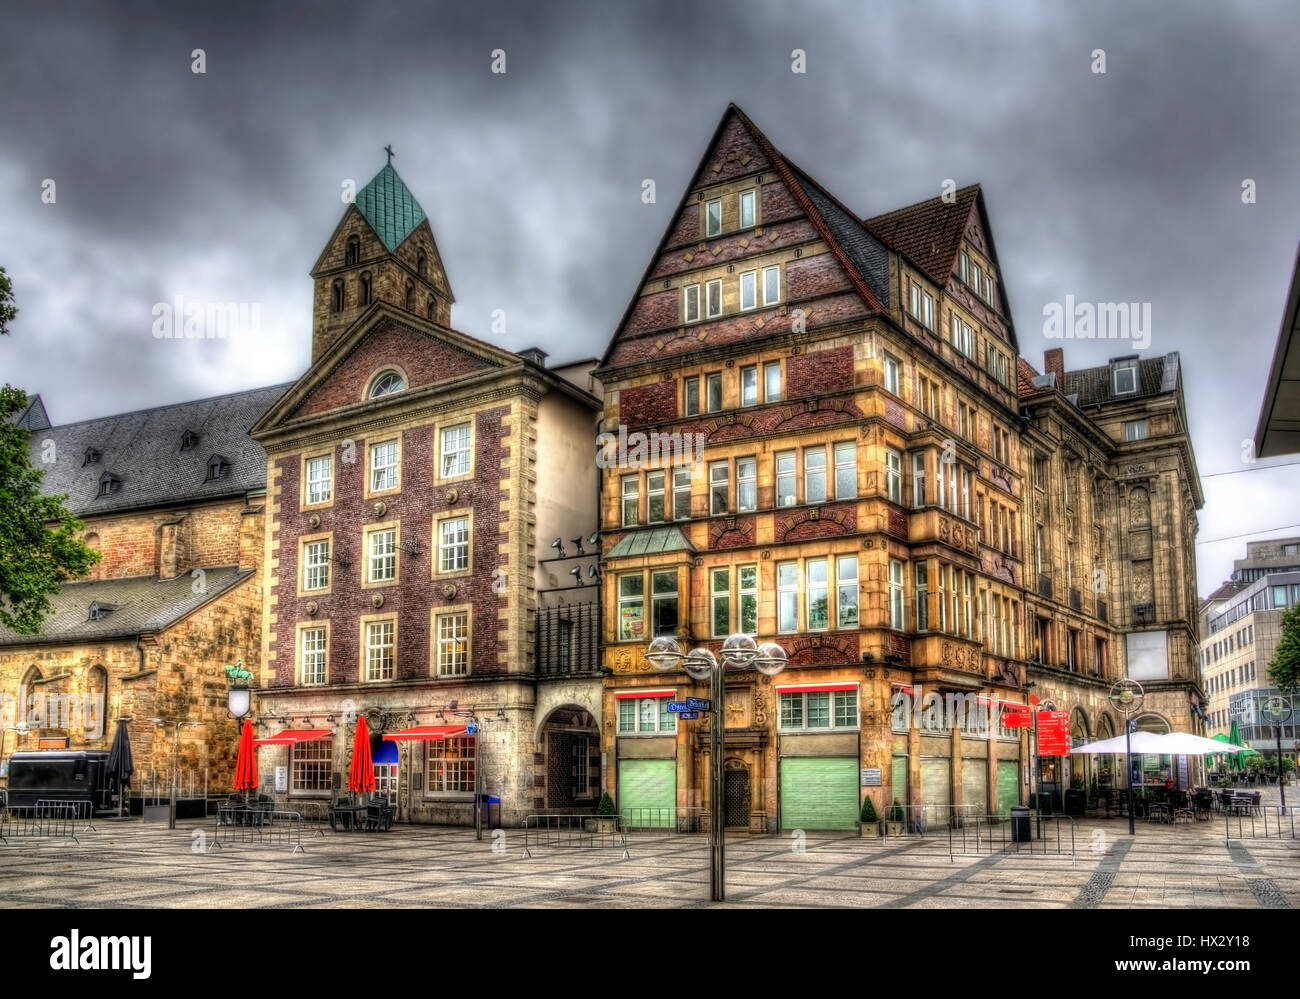 Buildings in Alter Markt square in Dortmund, Germany Stock Photo